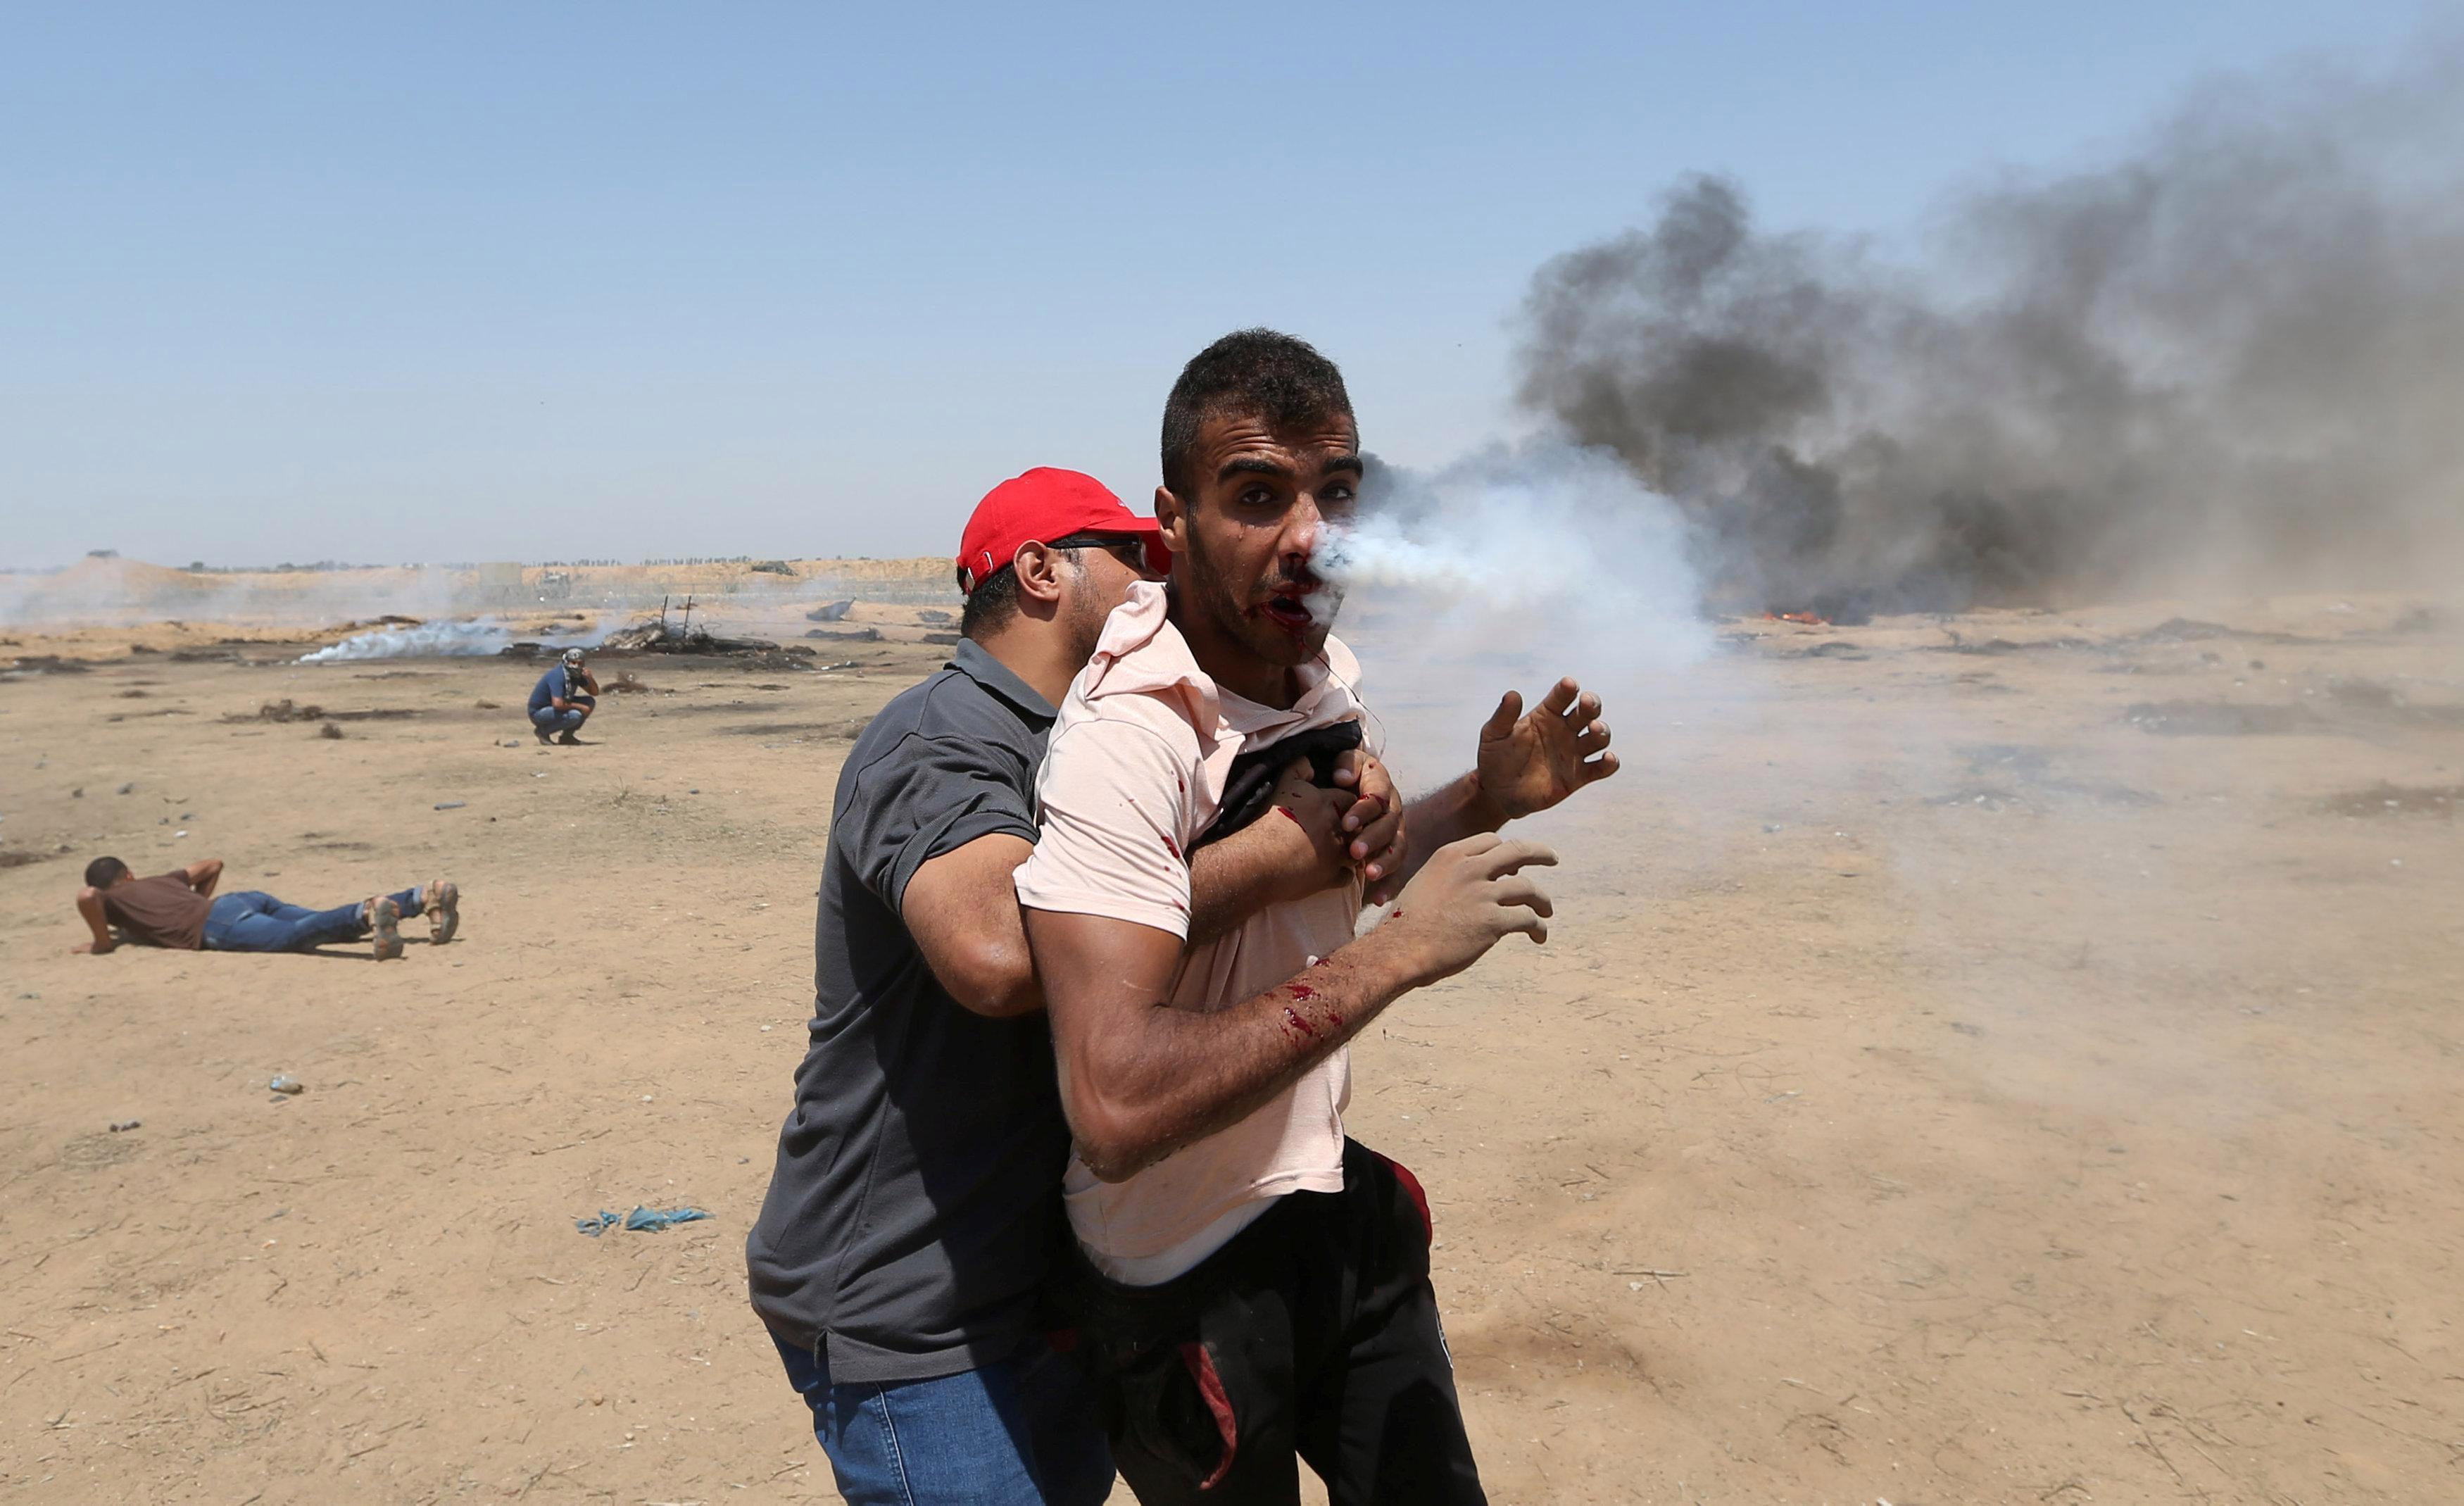 اصابة هيثم أبو سبلة بقنبلة غازية أثناء مسيرات العودة في غزة، 8 يونيو 2018. ابراهيم أبو مصطفى/ رويترز